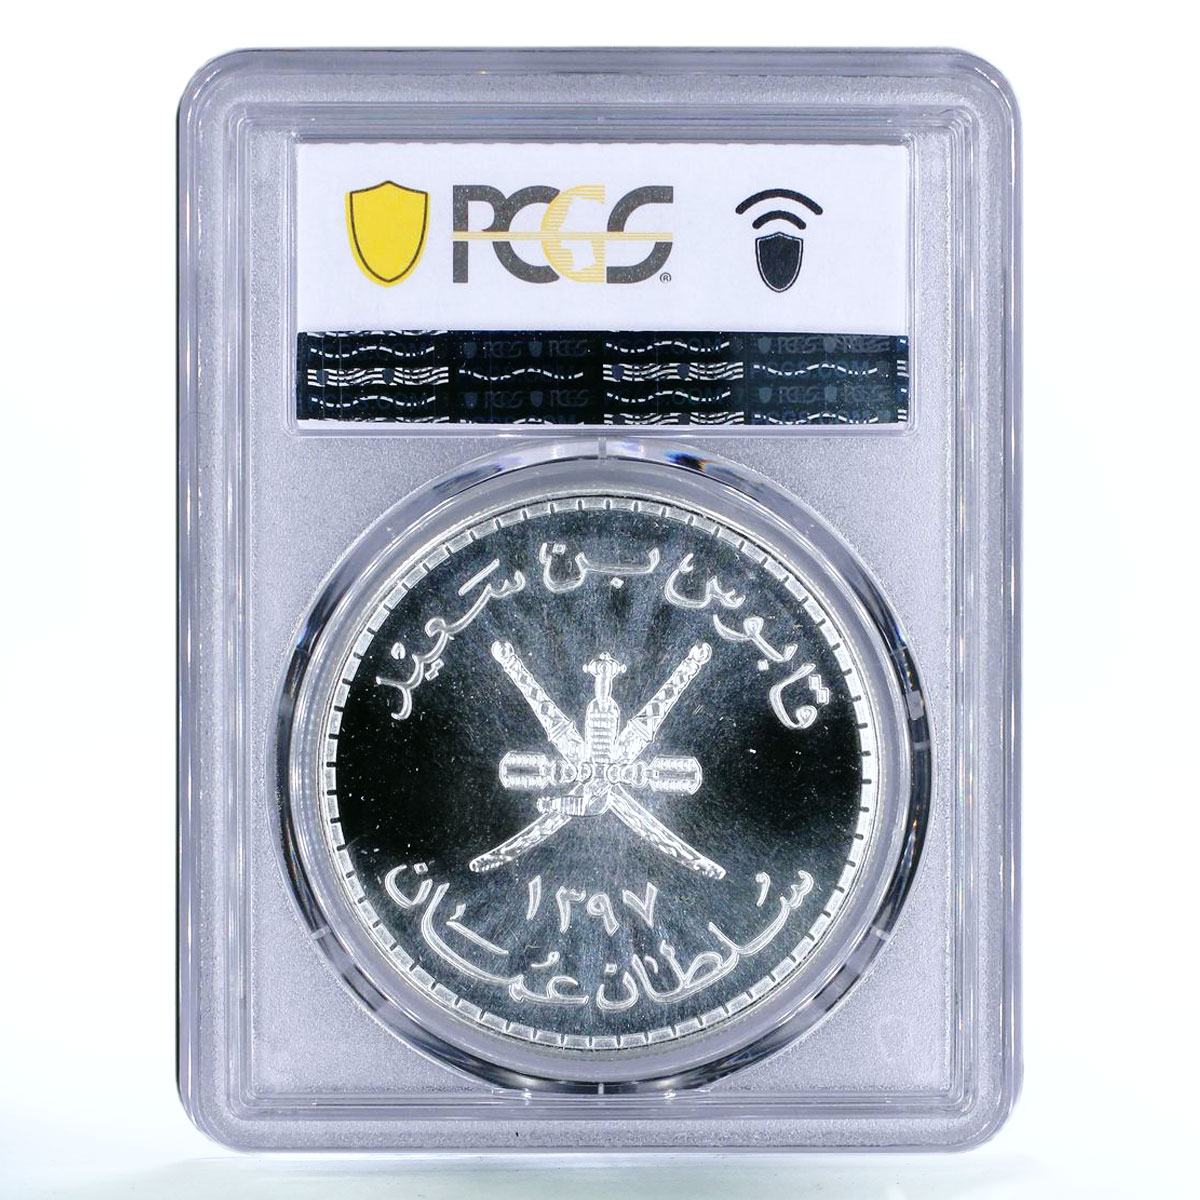 Oman 5 rials Arabian White Oryx Qaboos MS69 PCGS silver coin 1976